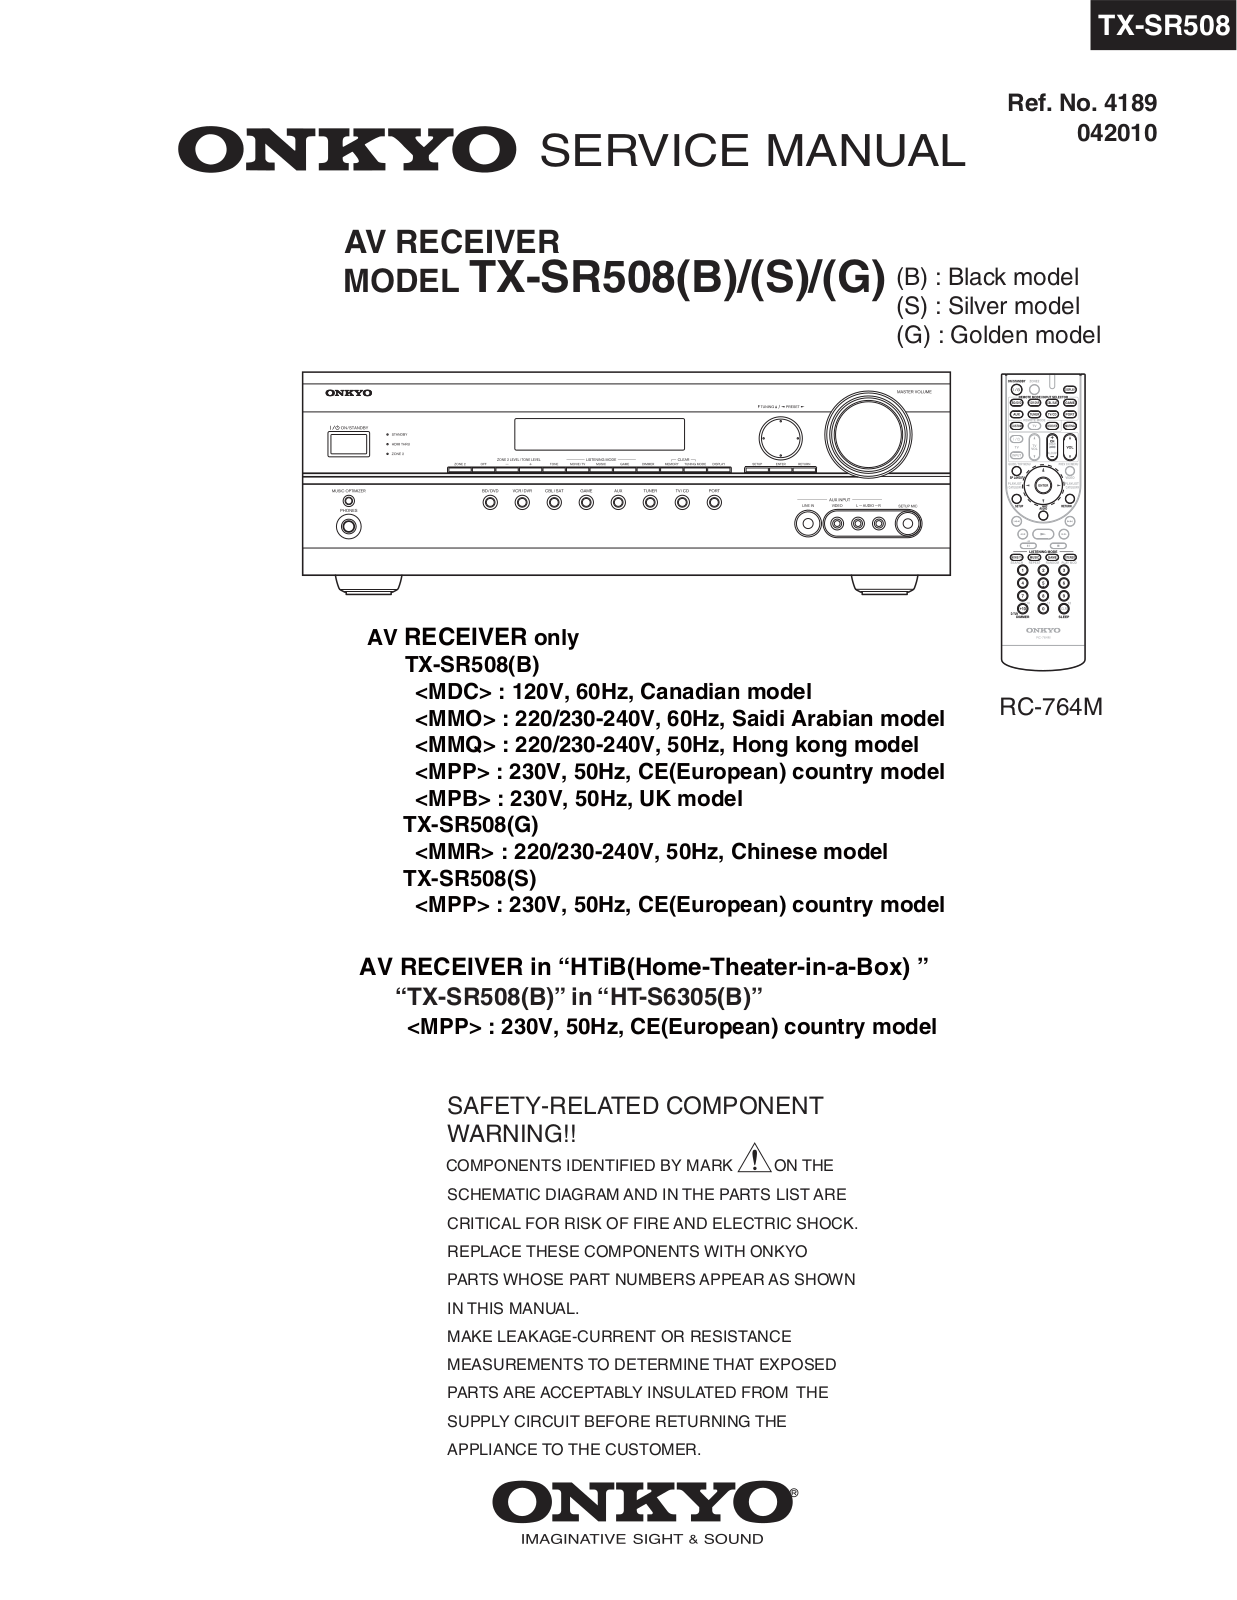 Onkyo TXSR-508 Service Manual